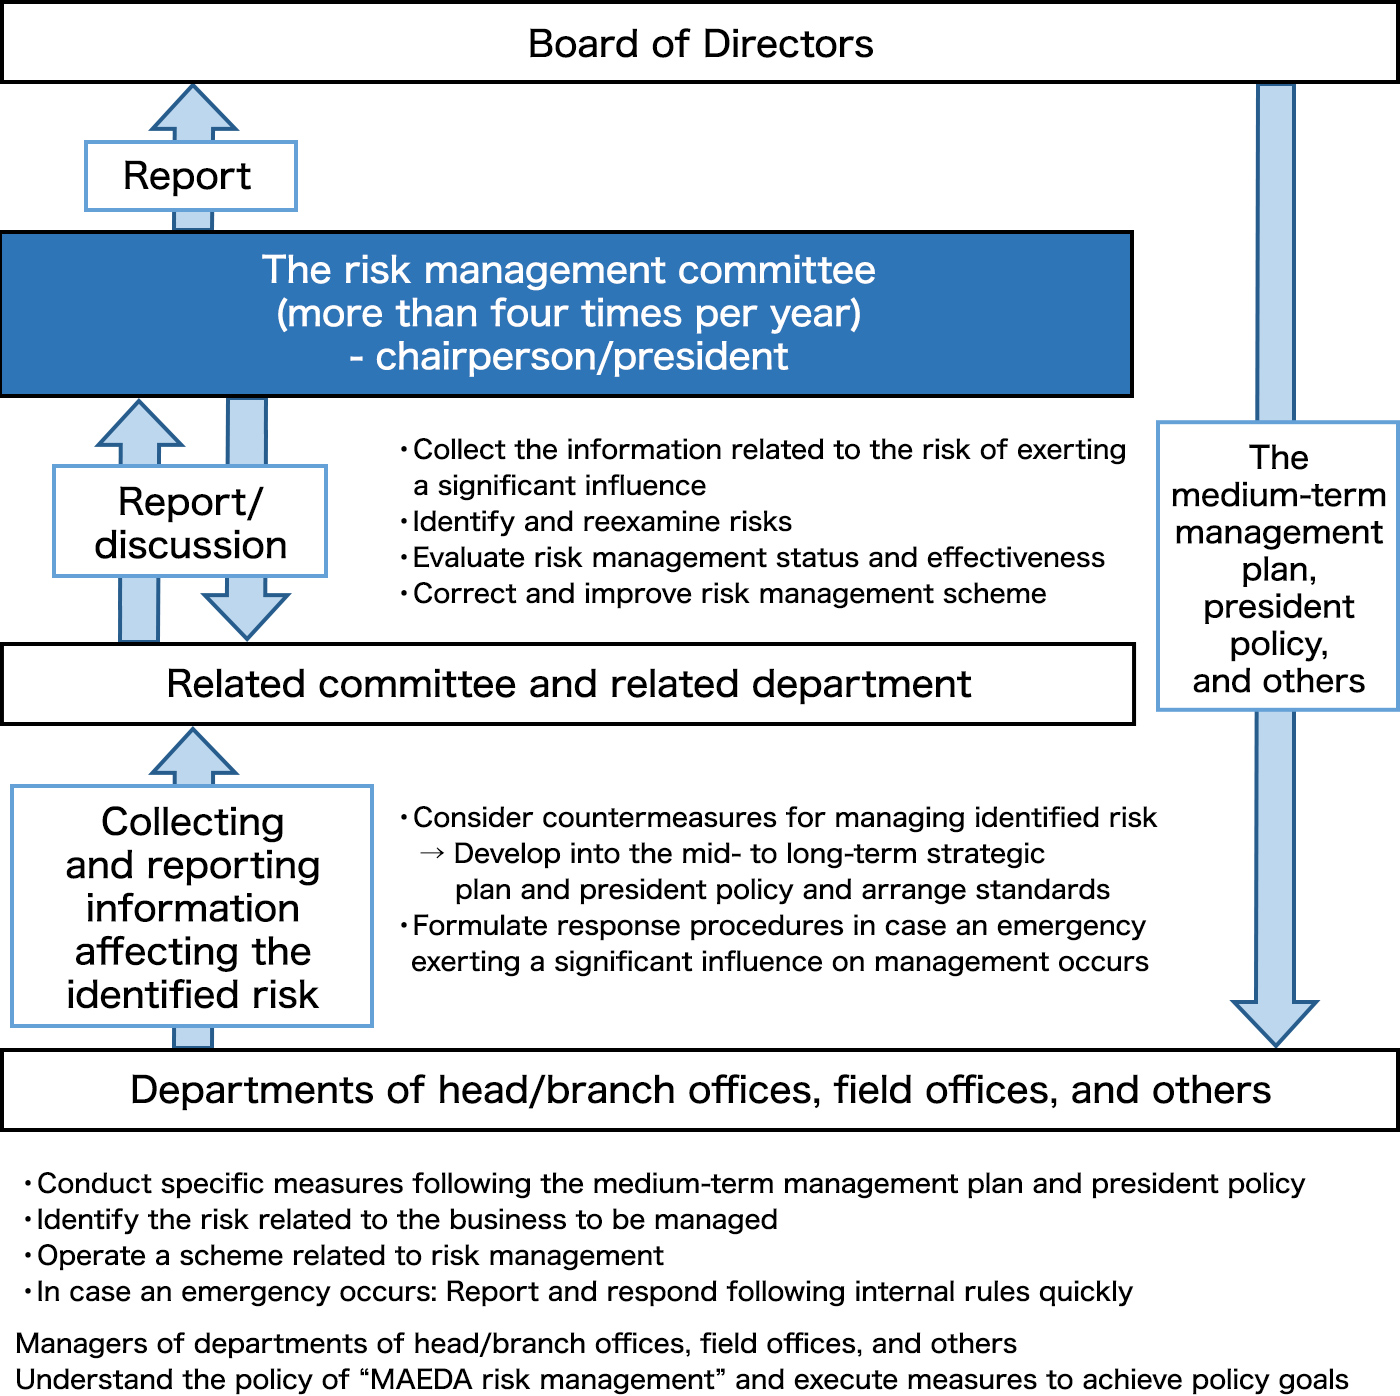 Risk management structure